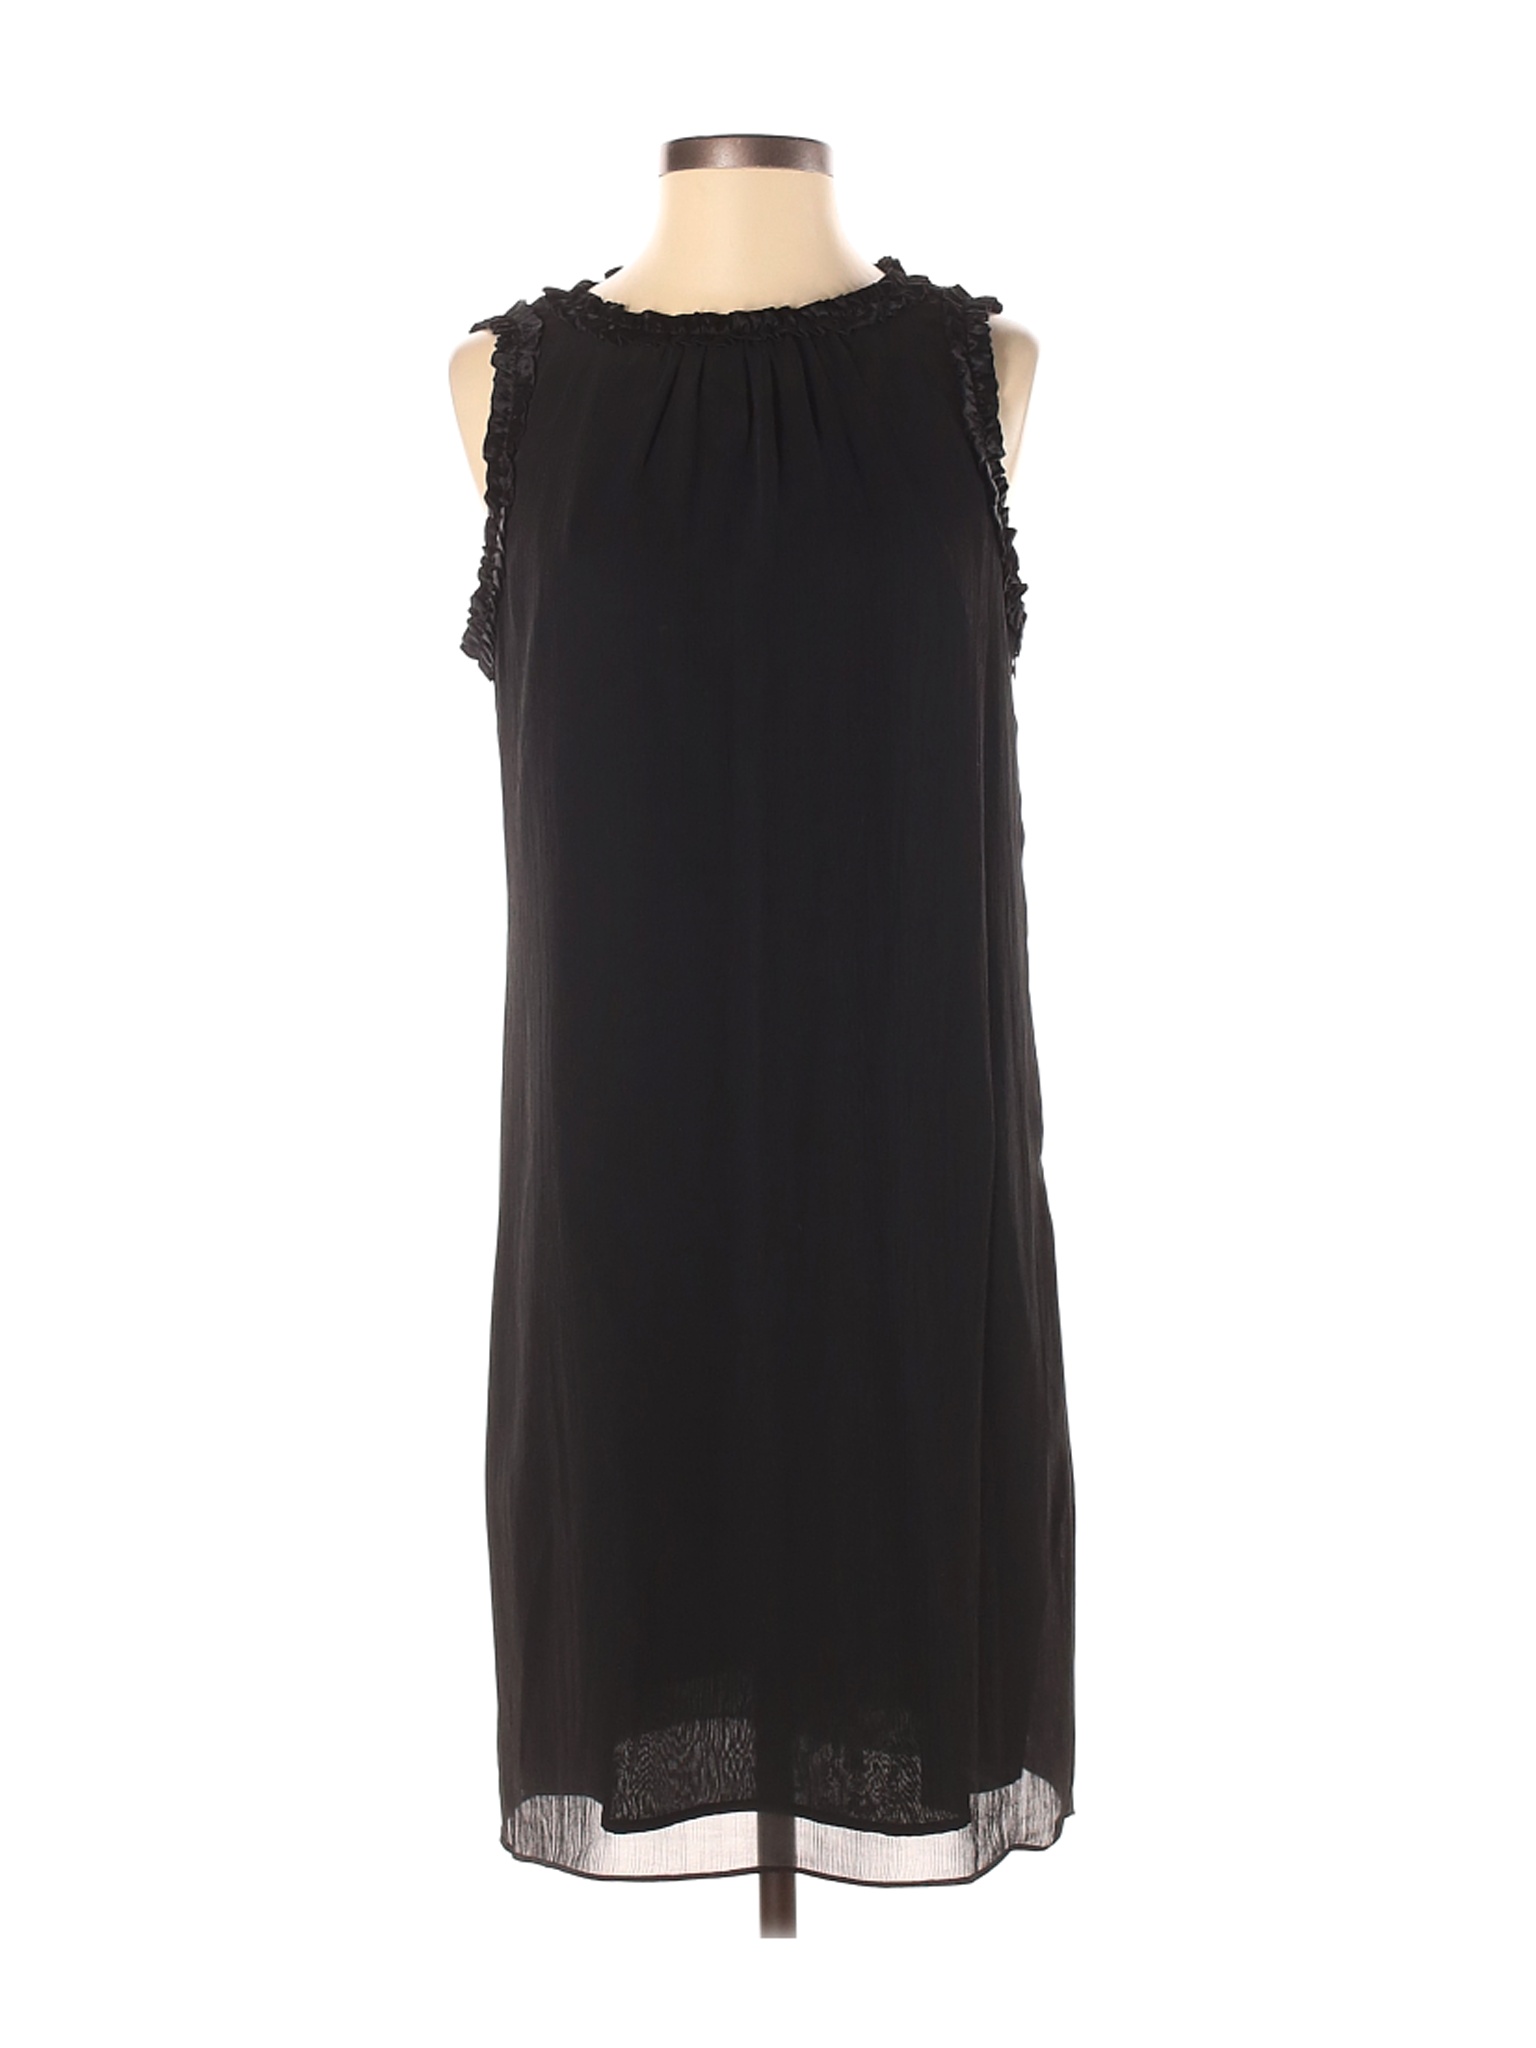 London Times Women Black Cocktail Dress 4 | eBay